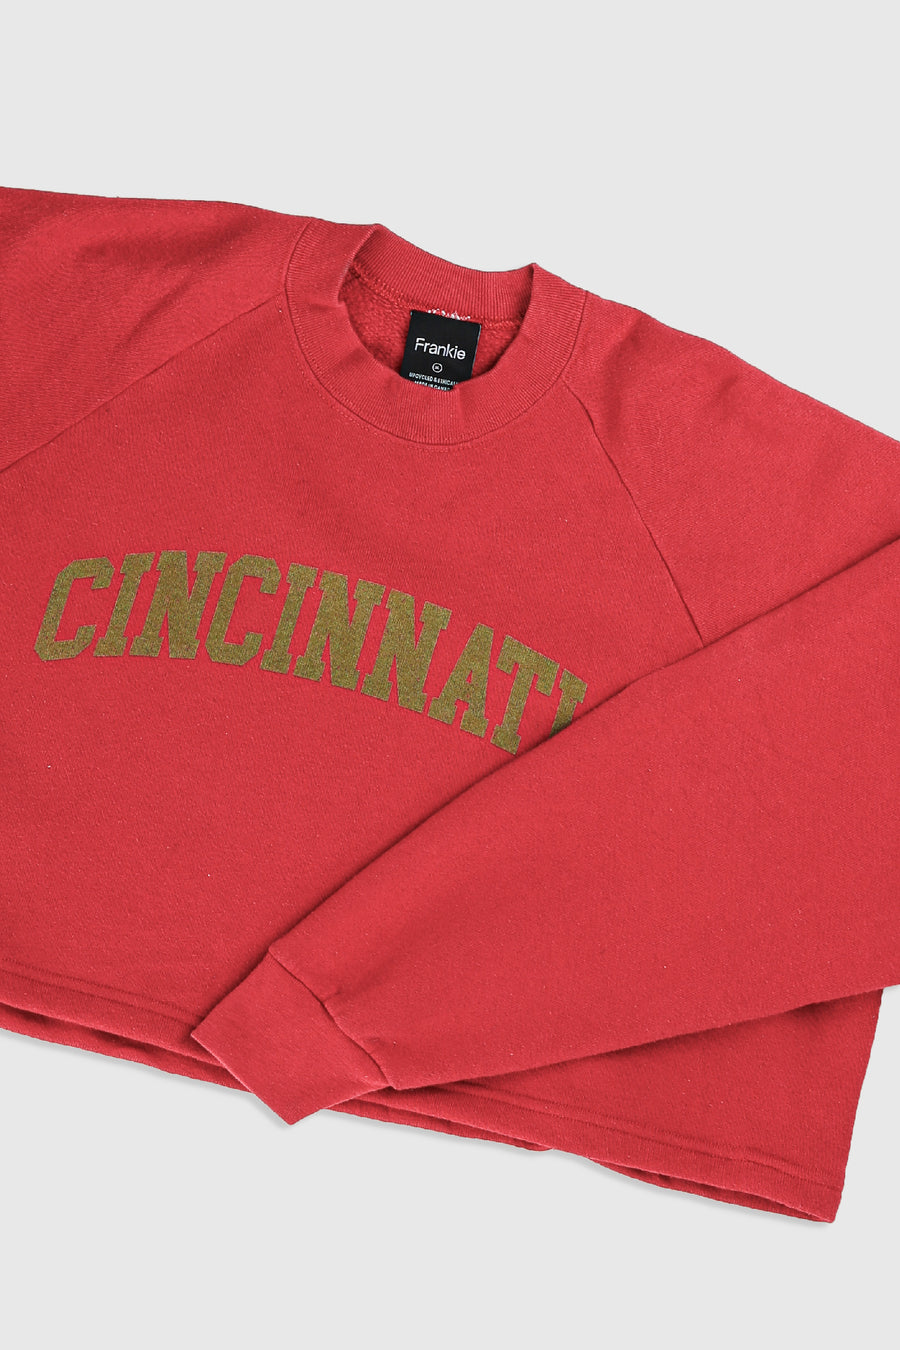 Rework Cincinnati Crop Sweatshirt - XL